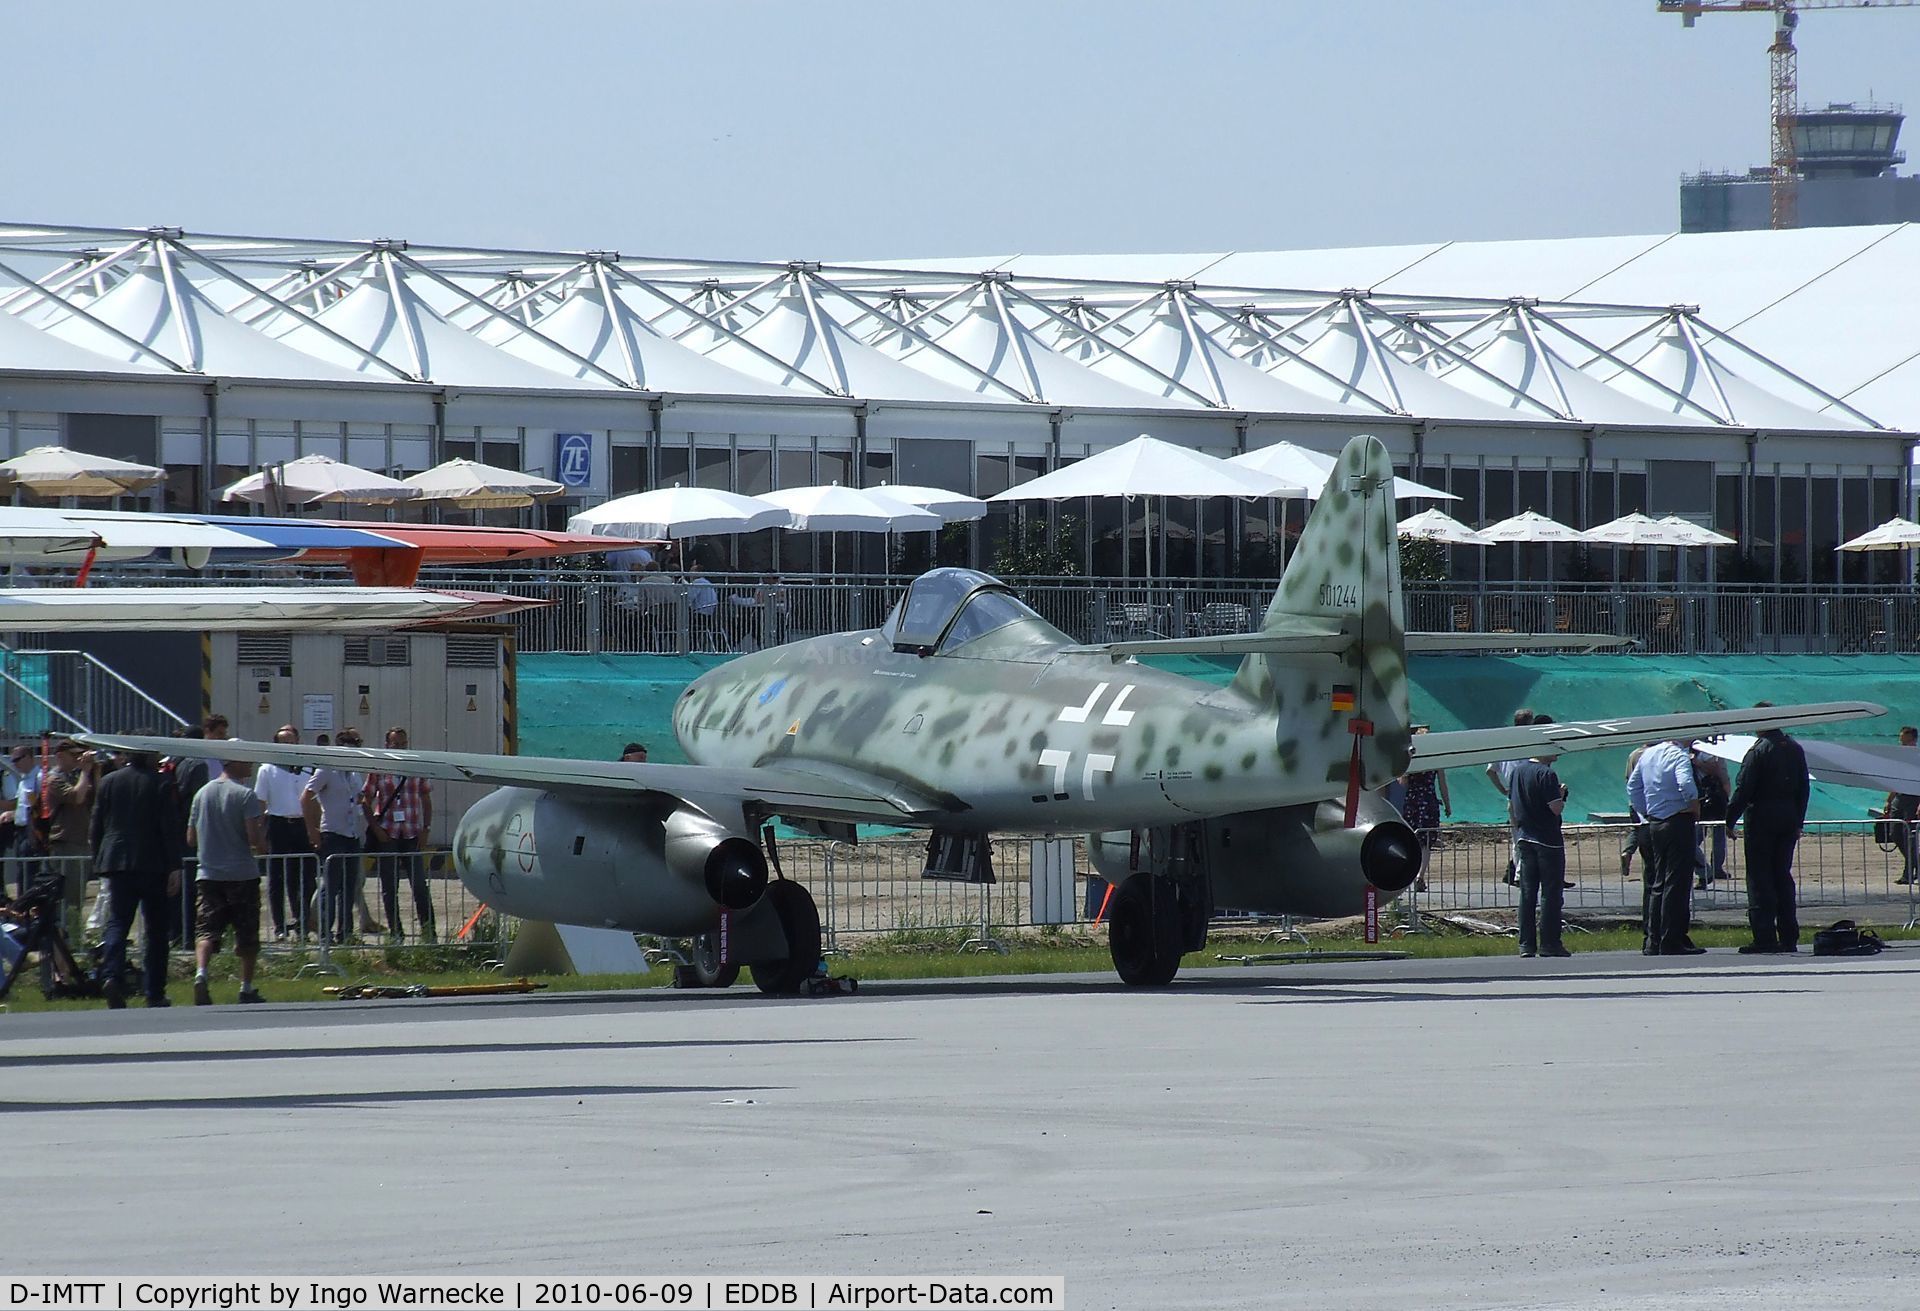 D-IMTT, 2005 Messerschmitt Me-262A-1C Schwalbe Replica C/N 501244, Messerschmitt (Hammer) Me 262B1-A replica at ILA 2010, Berlin